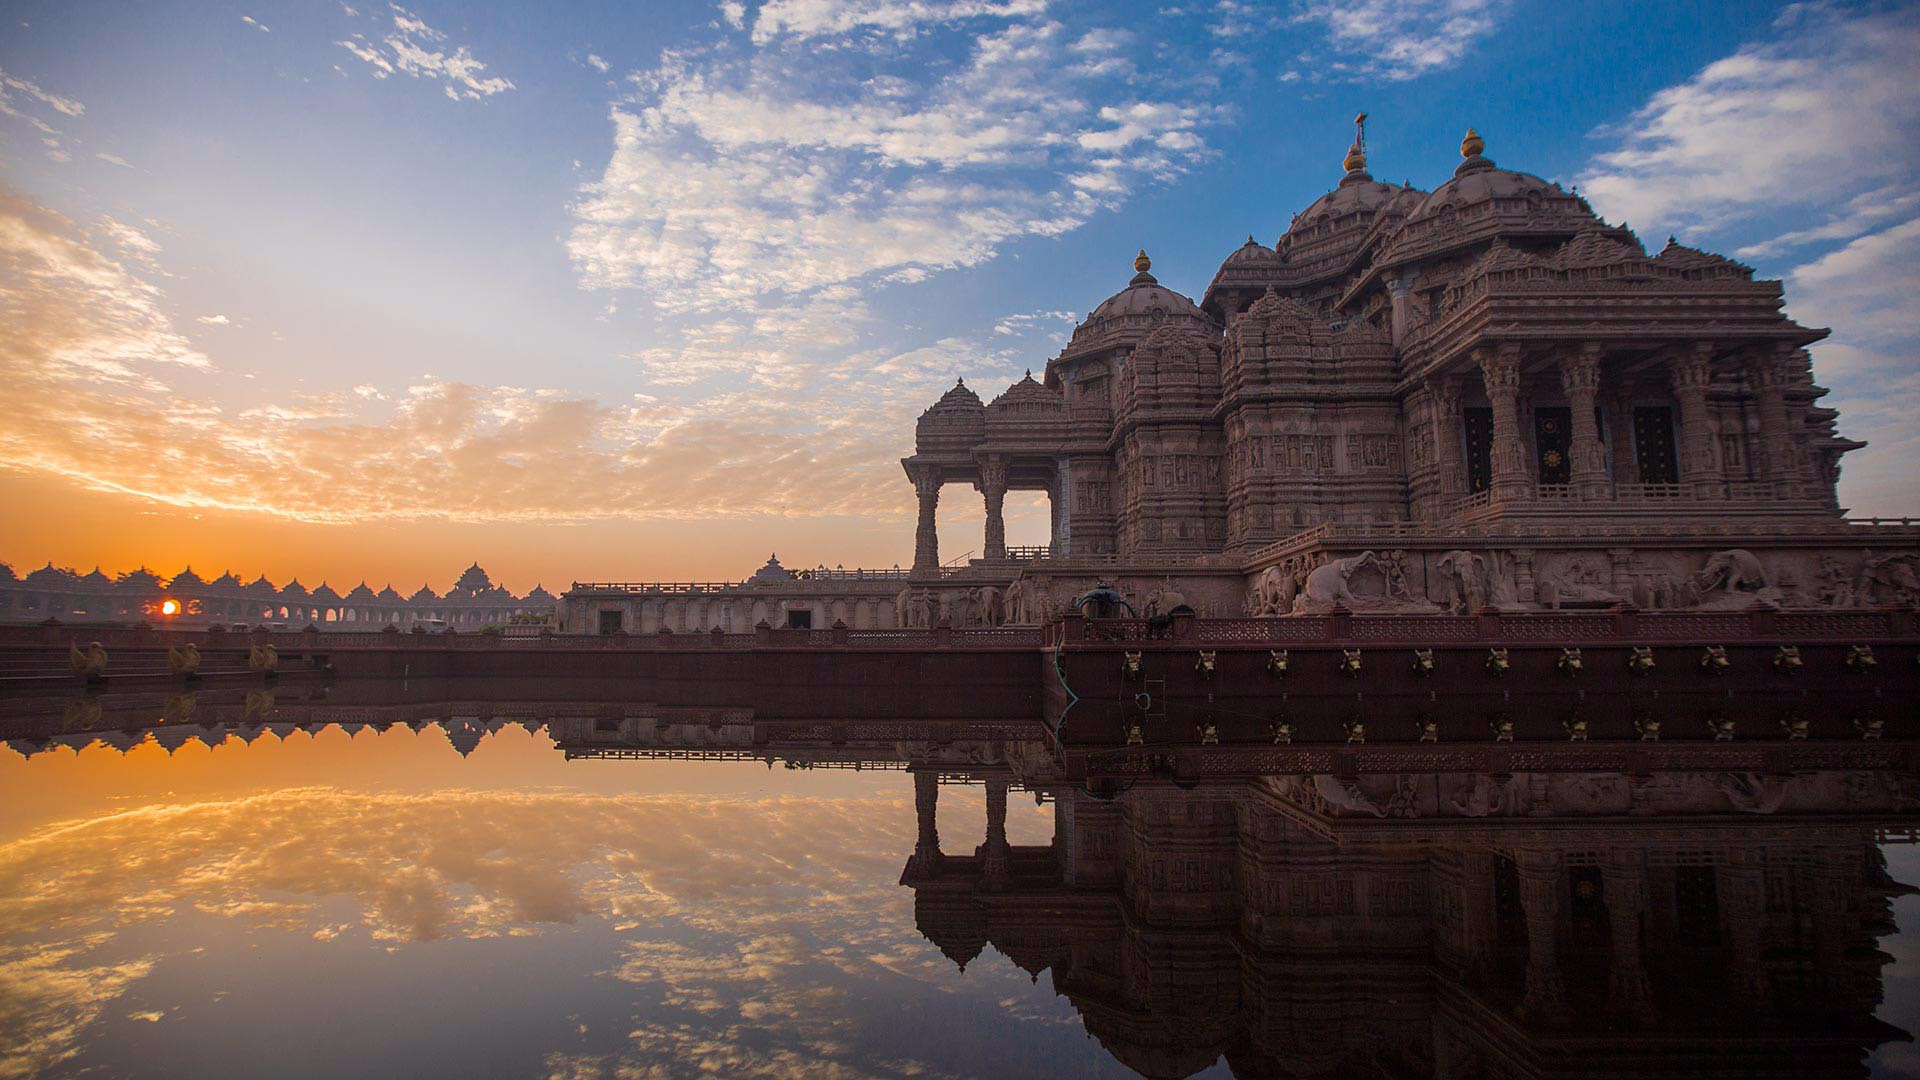 Aksharardham temple - ngôi đền được mệnh danh là bức tranh văn hóa vạn năm của xứ Ấn. Công trình Hindu giáo vĩ đại nhất của Án Độ toạ lạc ở phía đông của thủ đô New Delhi, điểm đến không thể bỏ qua khi đến Delhi